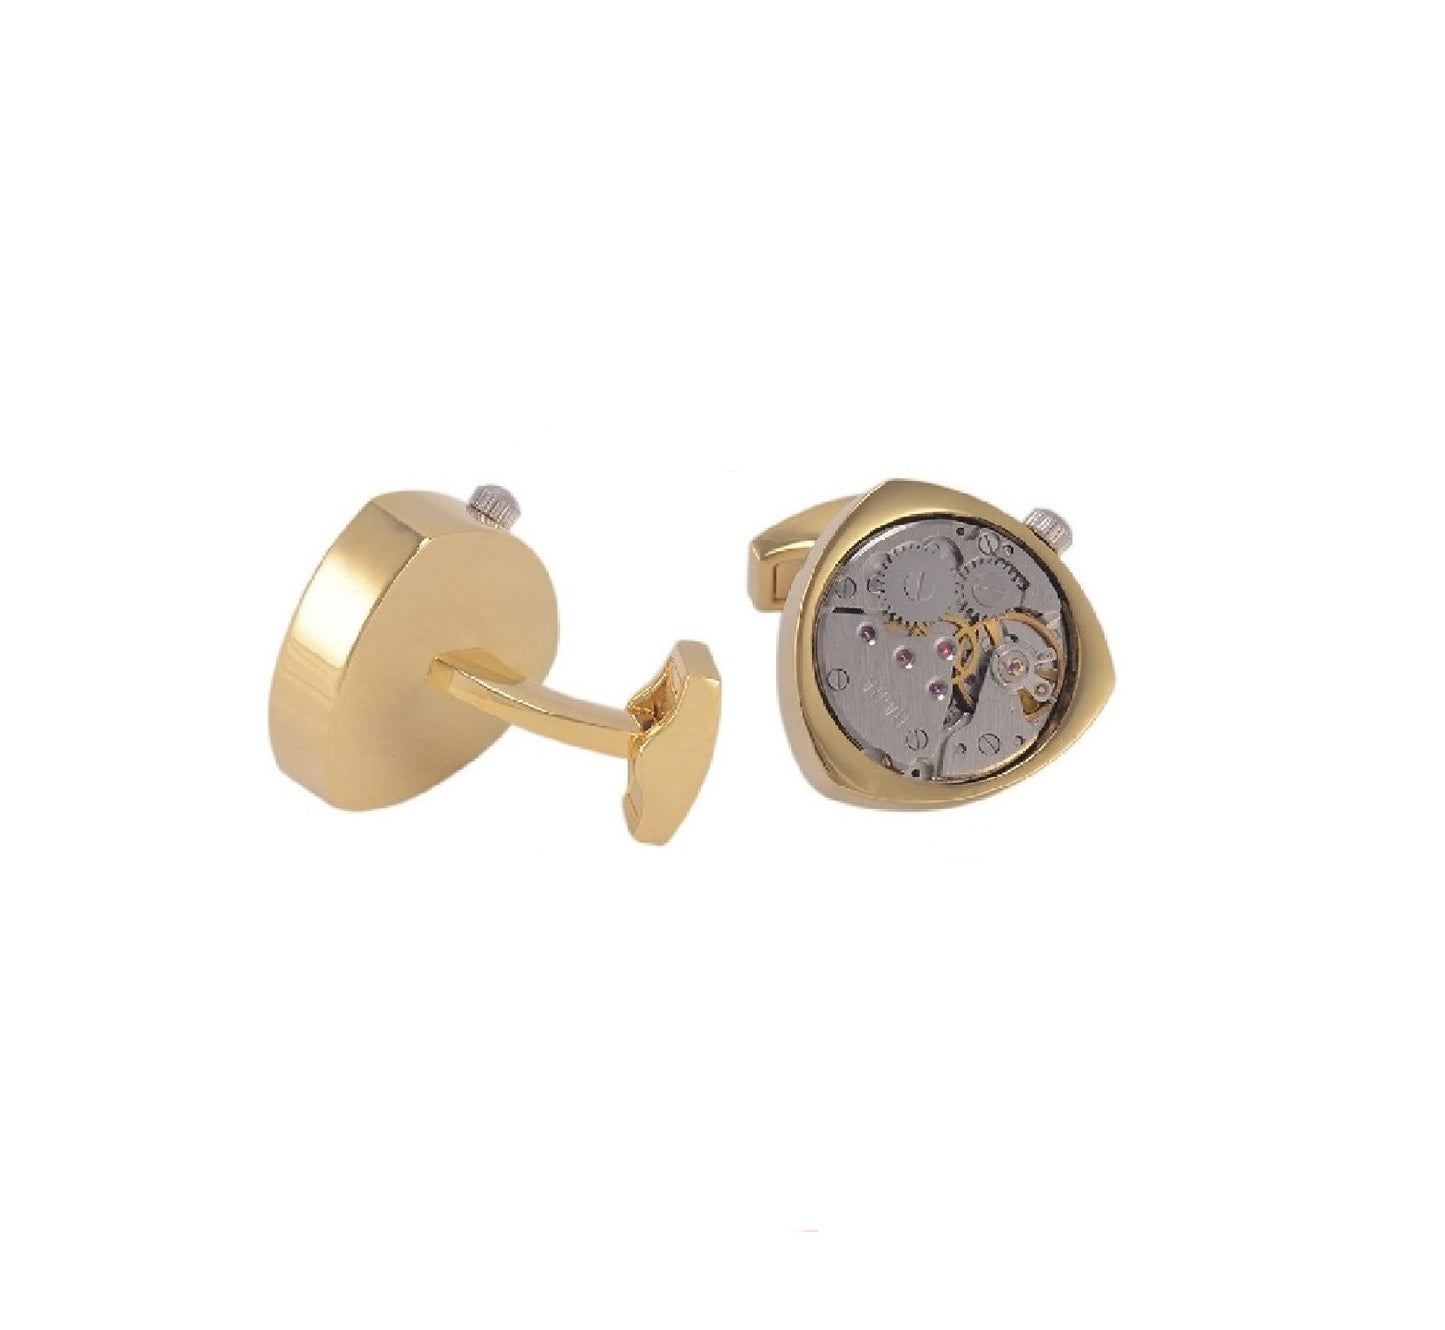 3 Sided Gold Wedding Watch Movement Cufflinks Steampunk Vintage Clockwork